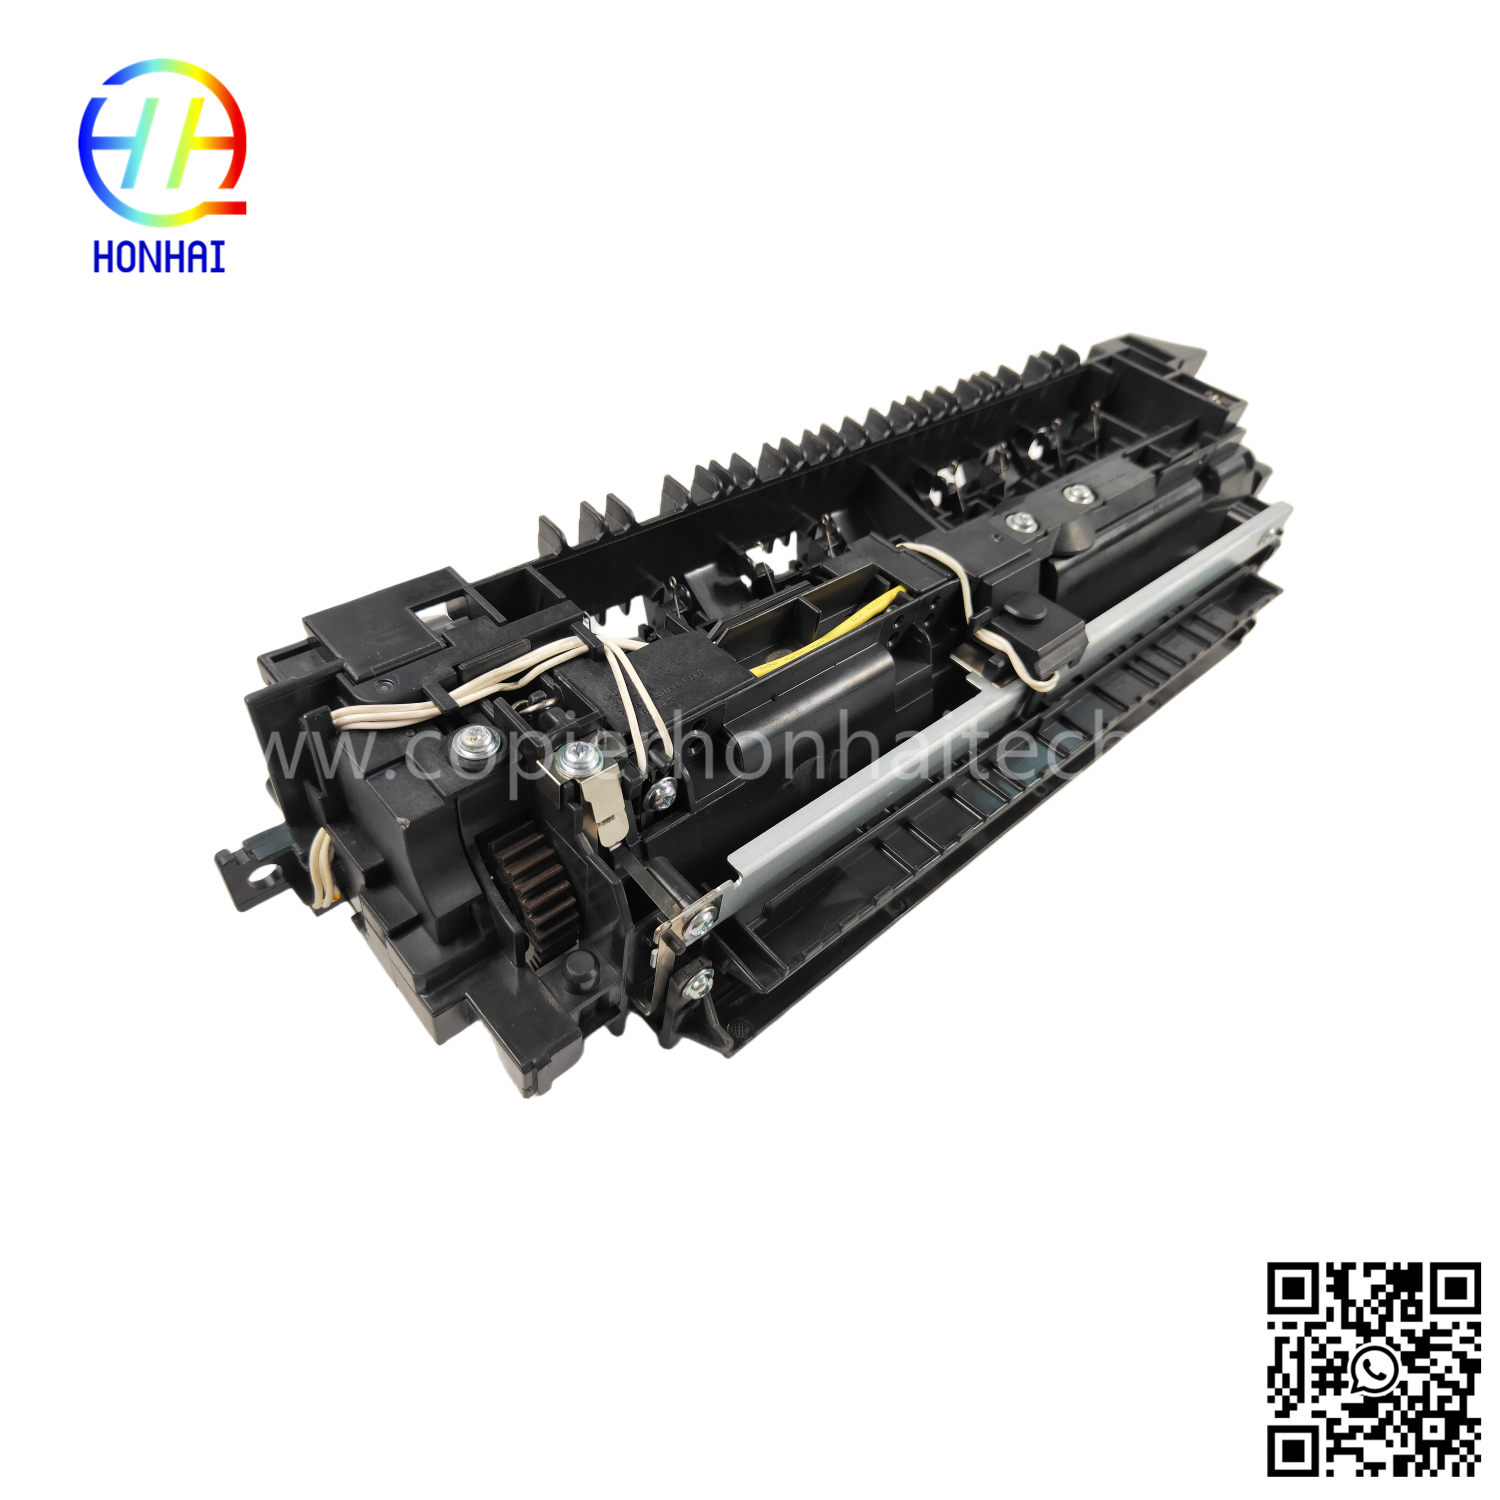 https://www.copierhonhaitech.com/fuser-unit-220v-for-brother-mfc-l3750cdw-mfc-l3770cdw-fuser-assemble-product/